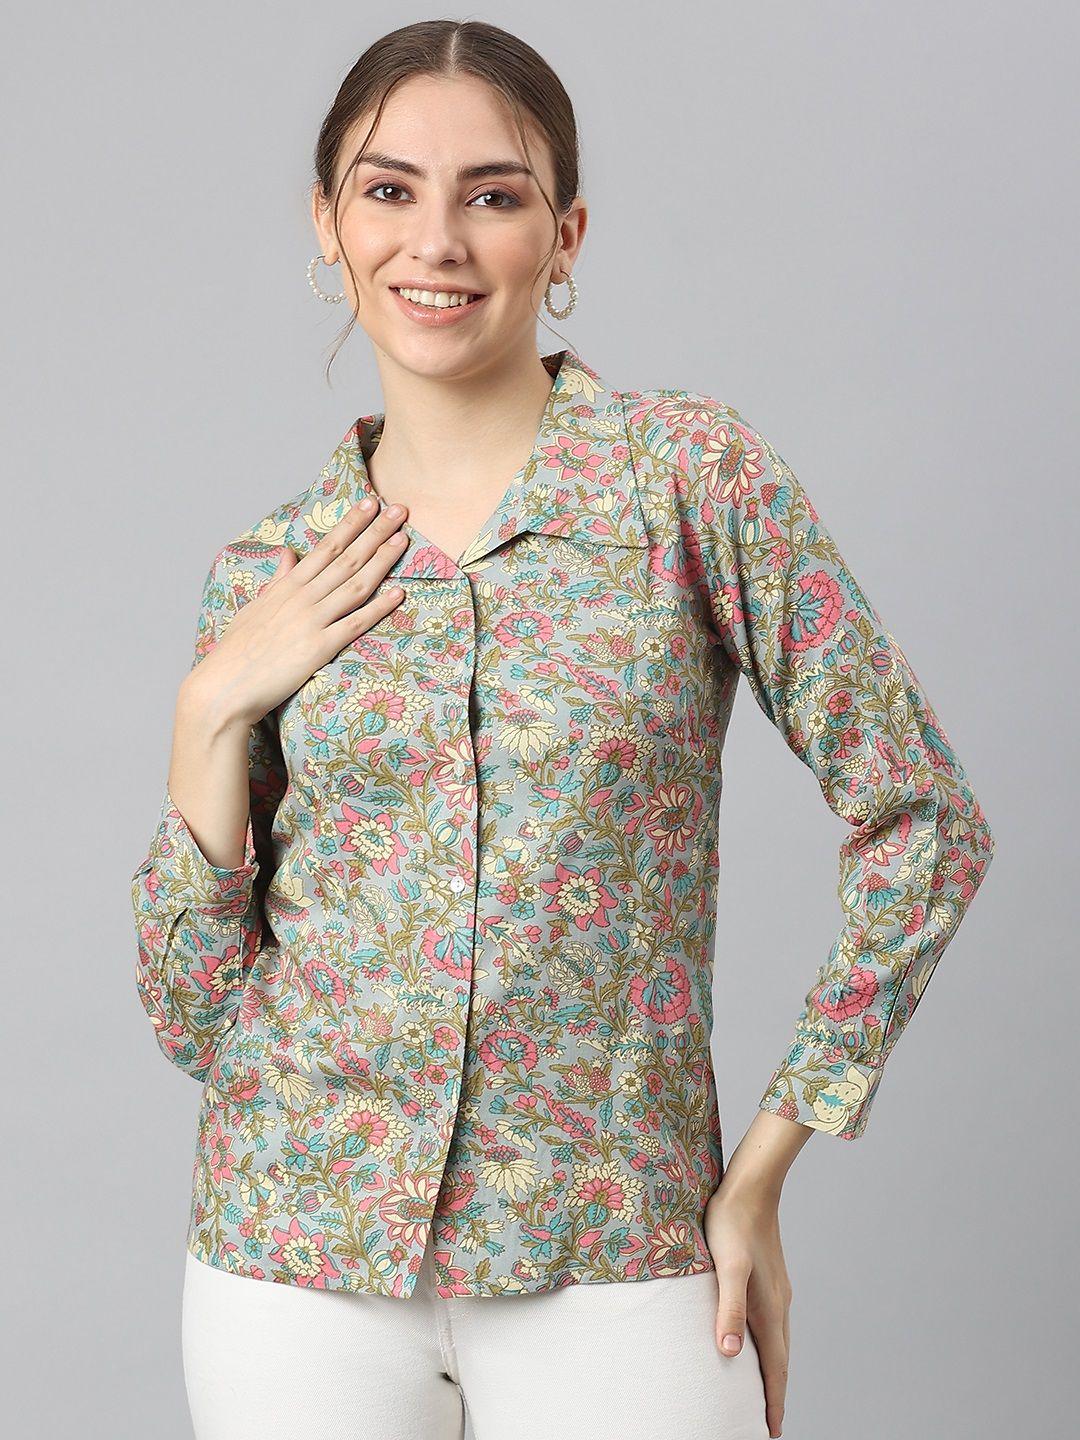 kalini grey & pink floral print shirt style top